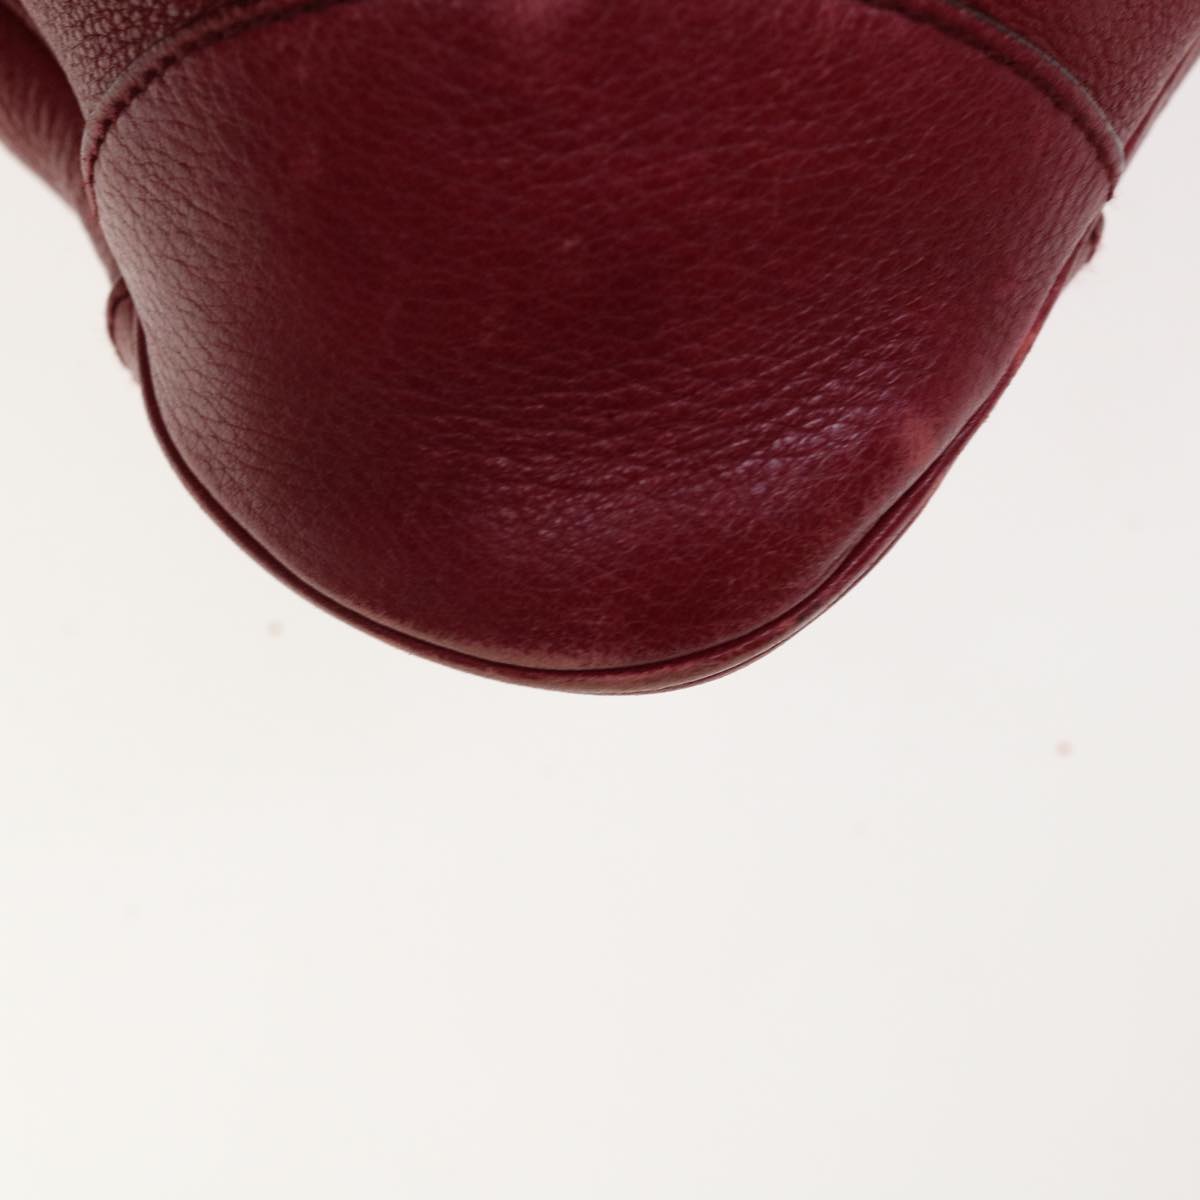 Salvatore Ferragamo Gancini Hand Bag Leather Red Auth 66232